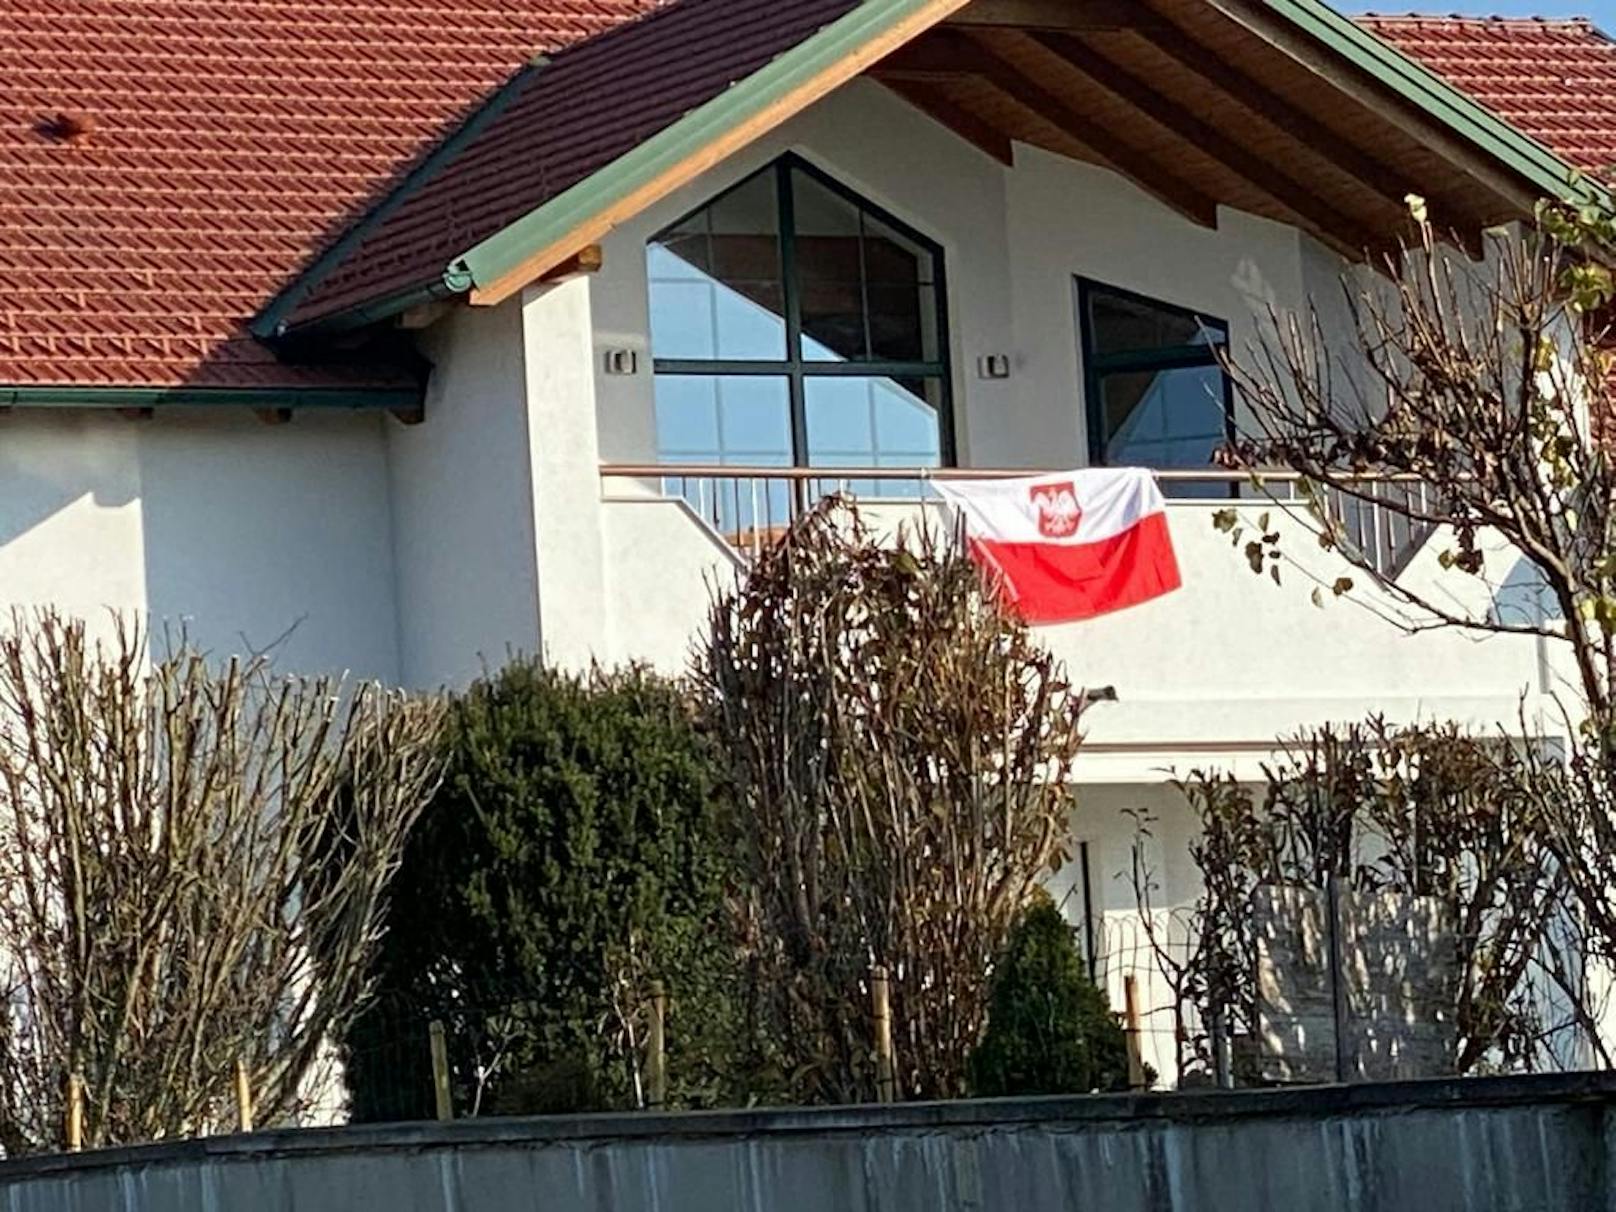 Während er im Spital um sein Leben kämpfte, soll sie die Polenflagge in seinem Haus gehisst haben.